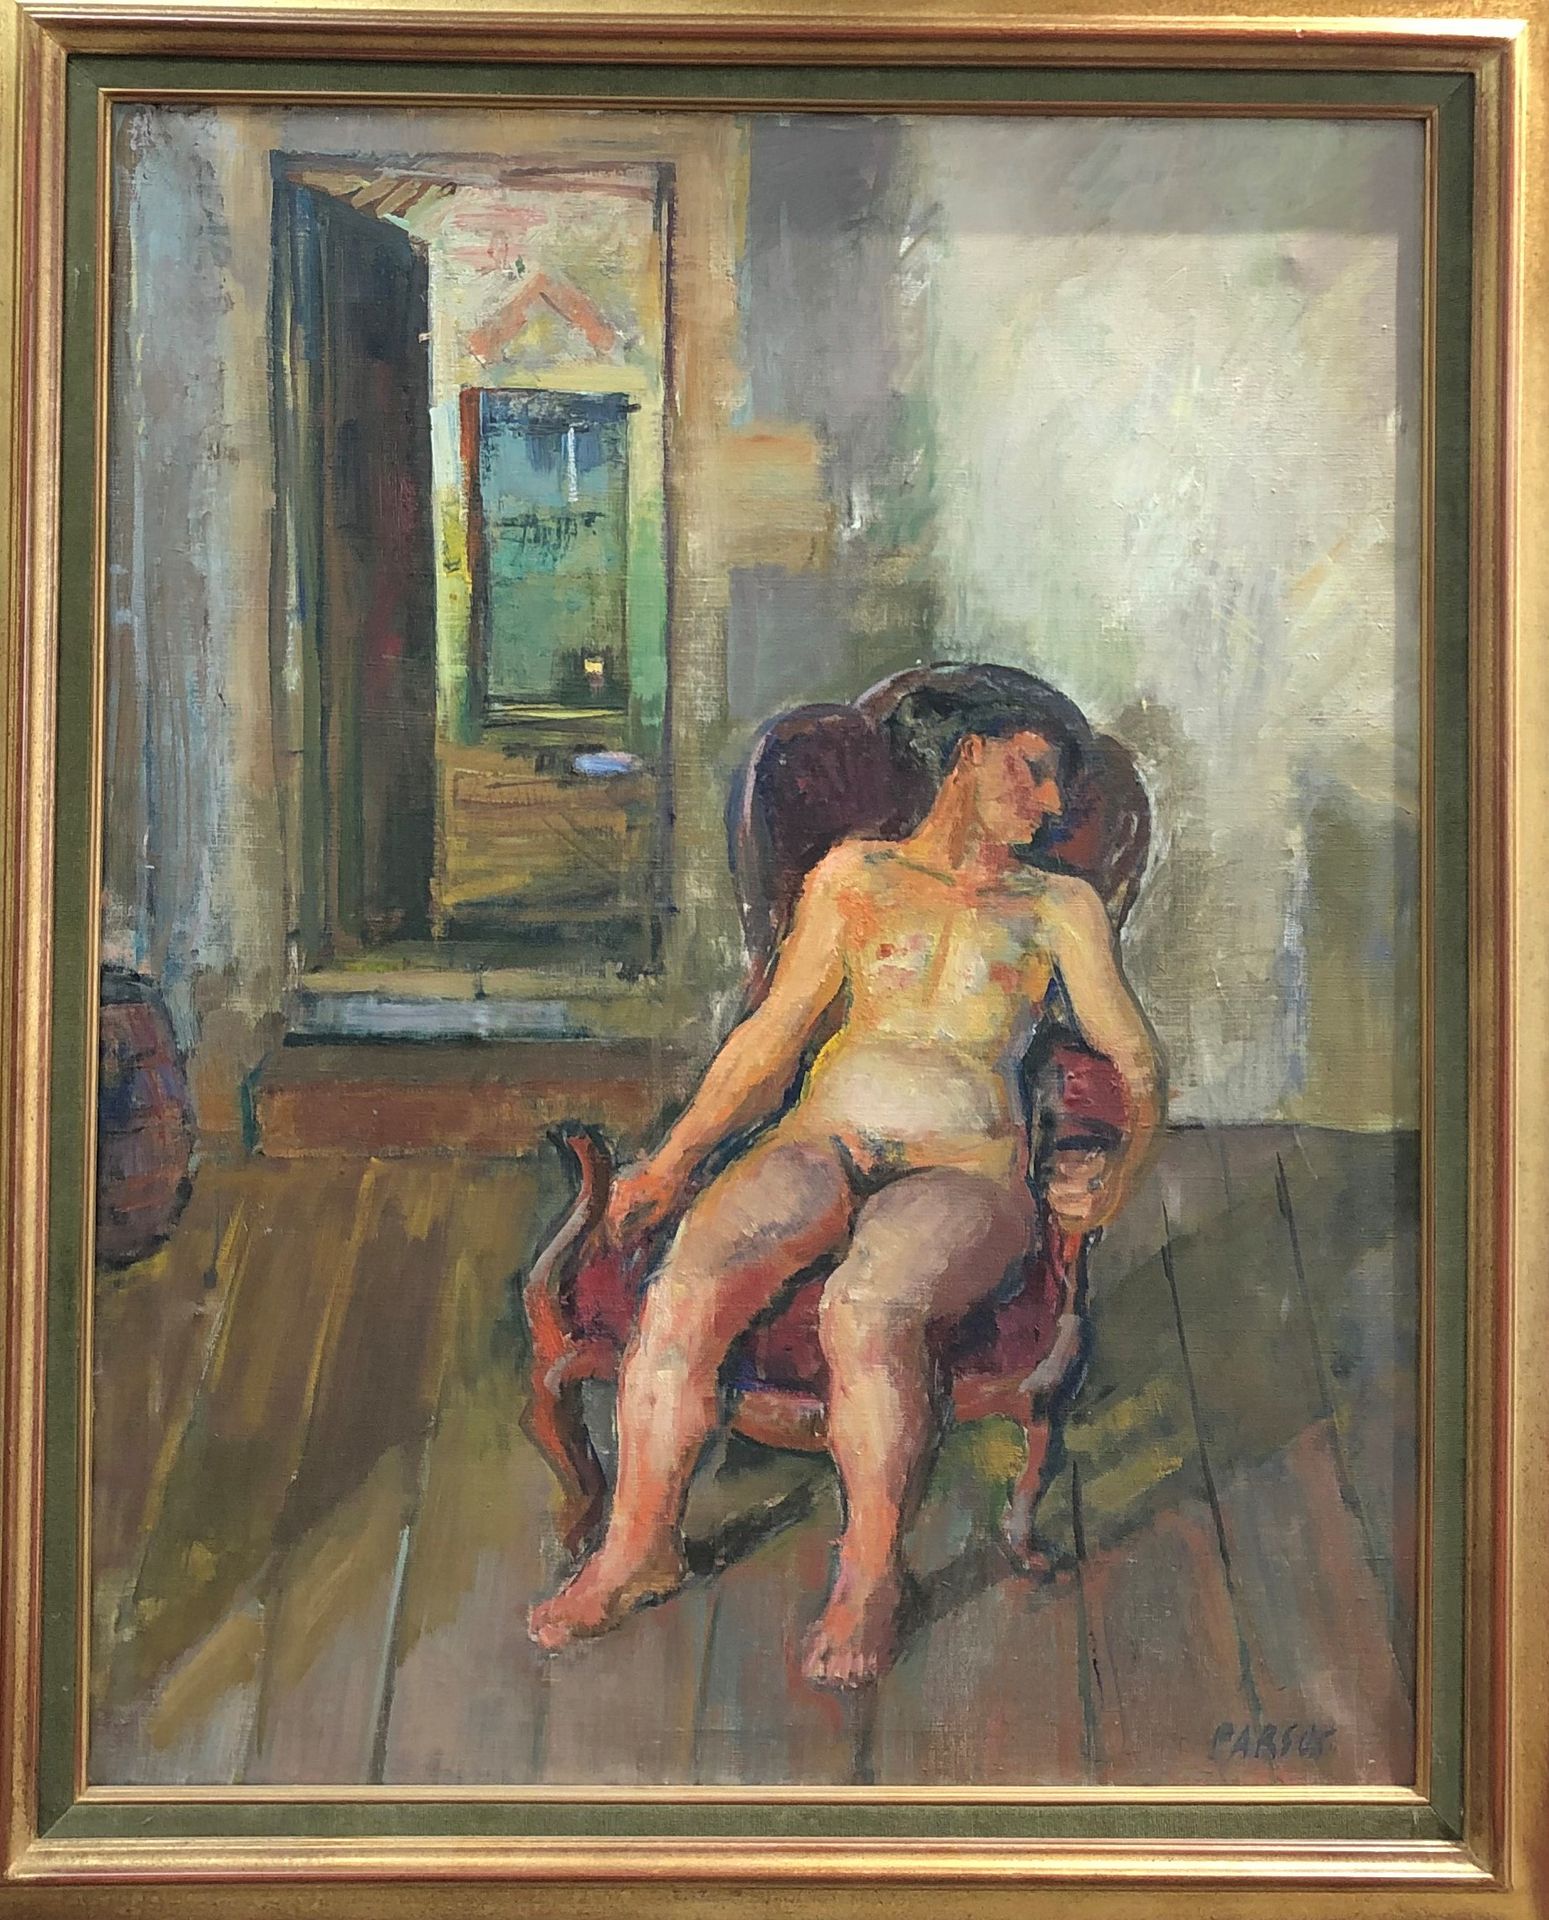 Null Pierre PARSUS (nato nel 1921)

Nudo seduto su una poltrona 

Olio su tela. &hellip;